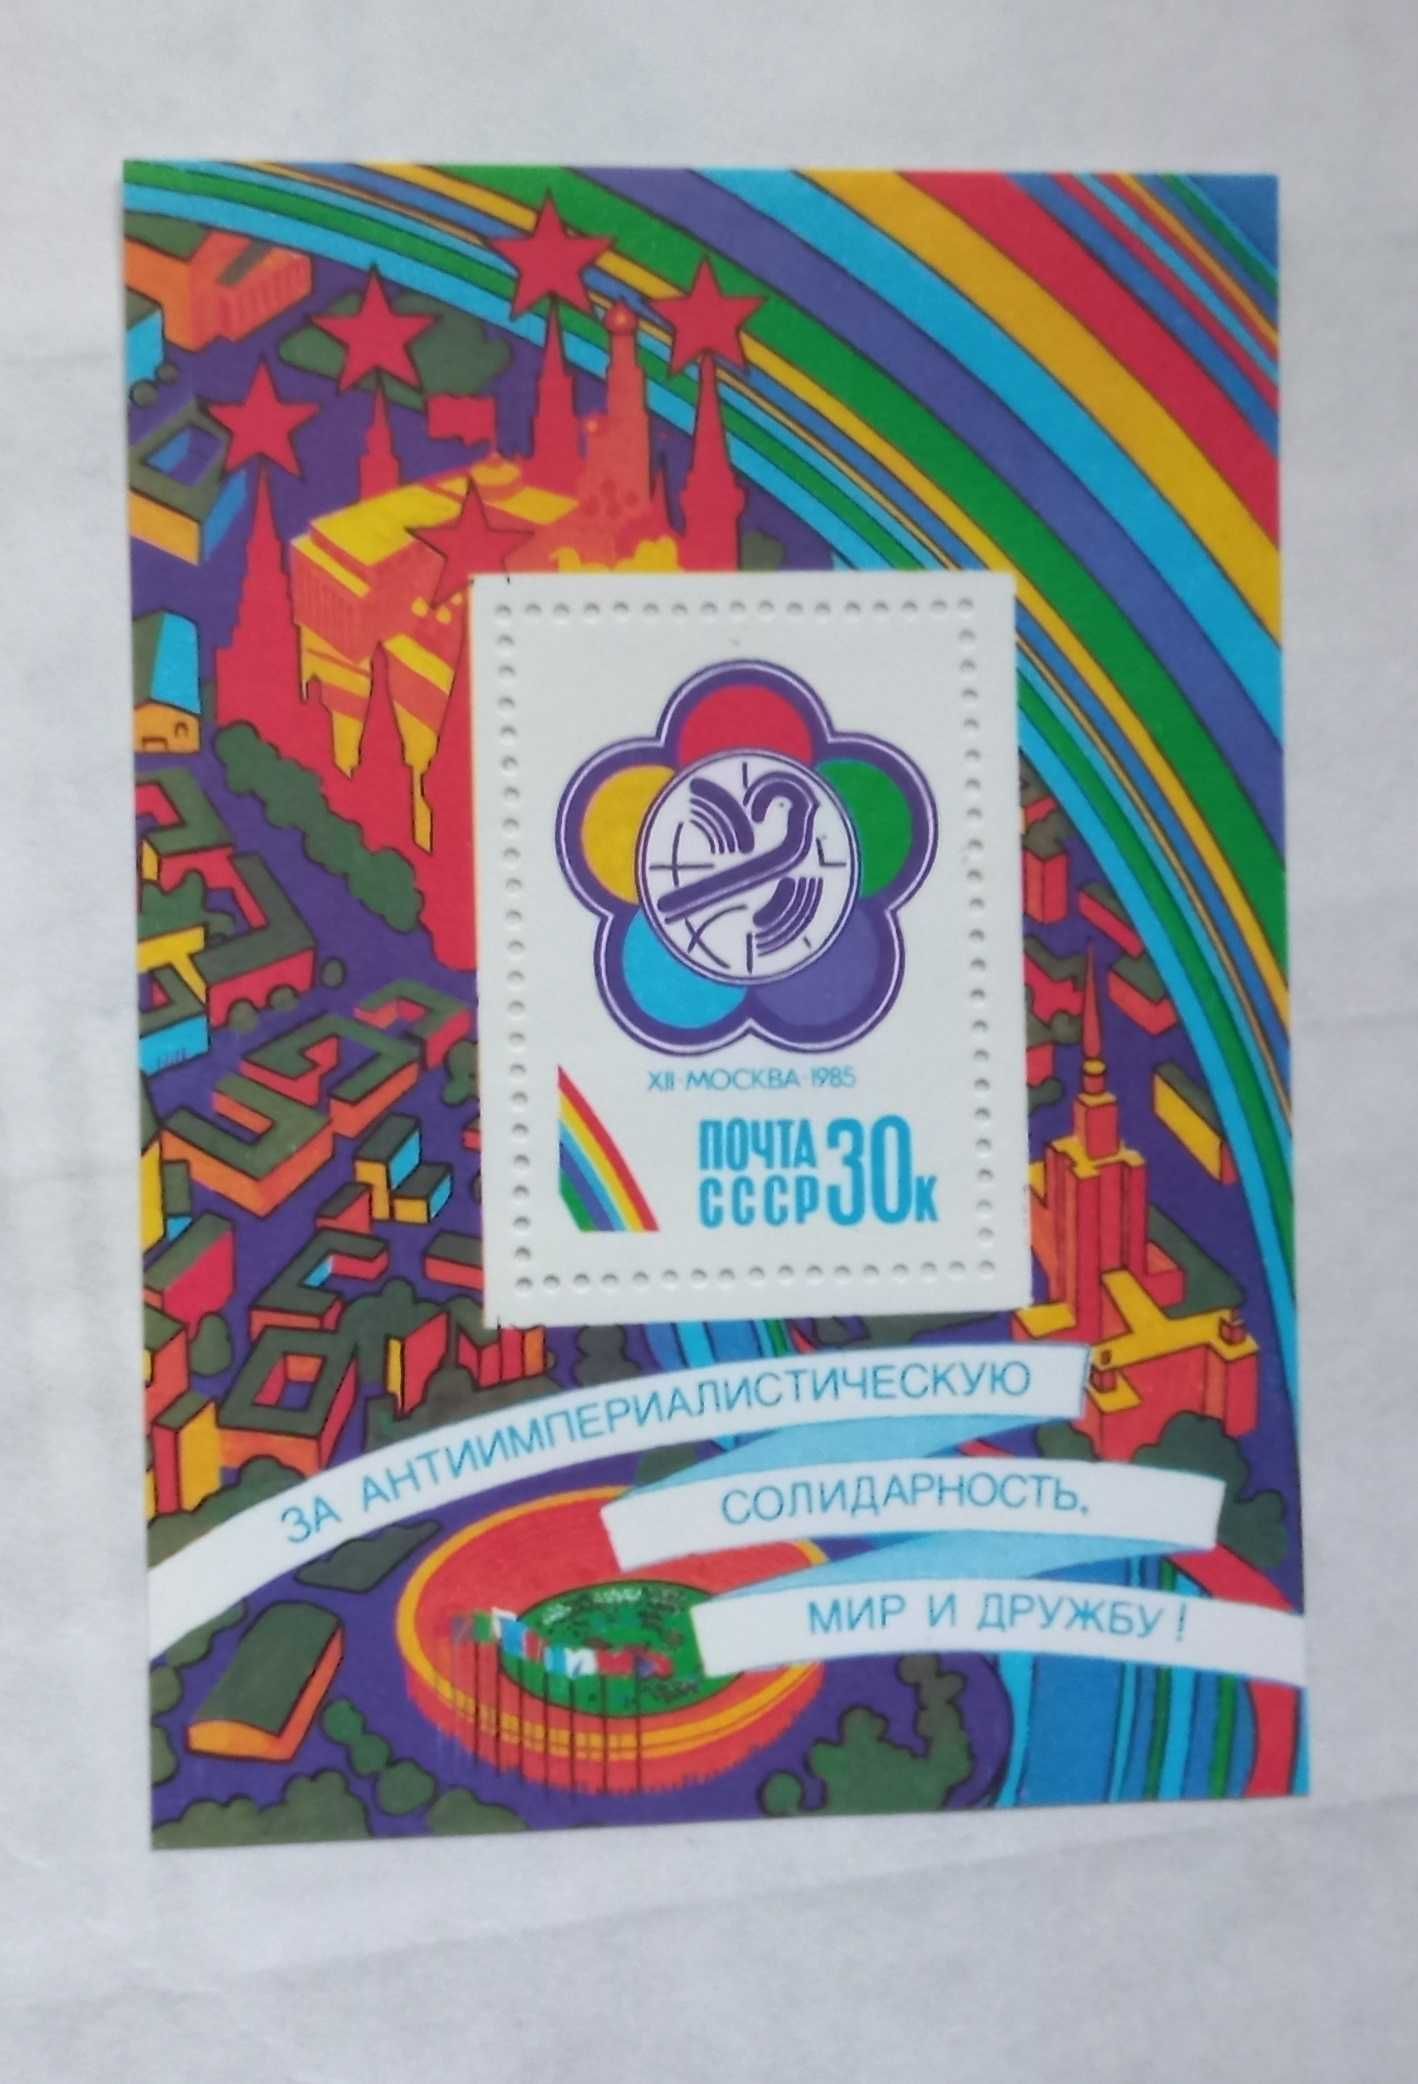 Znaczek pocztowy - ZSRR - wystawa 1985